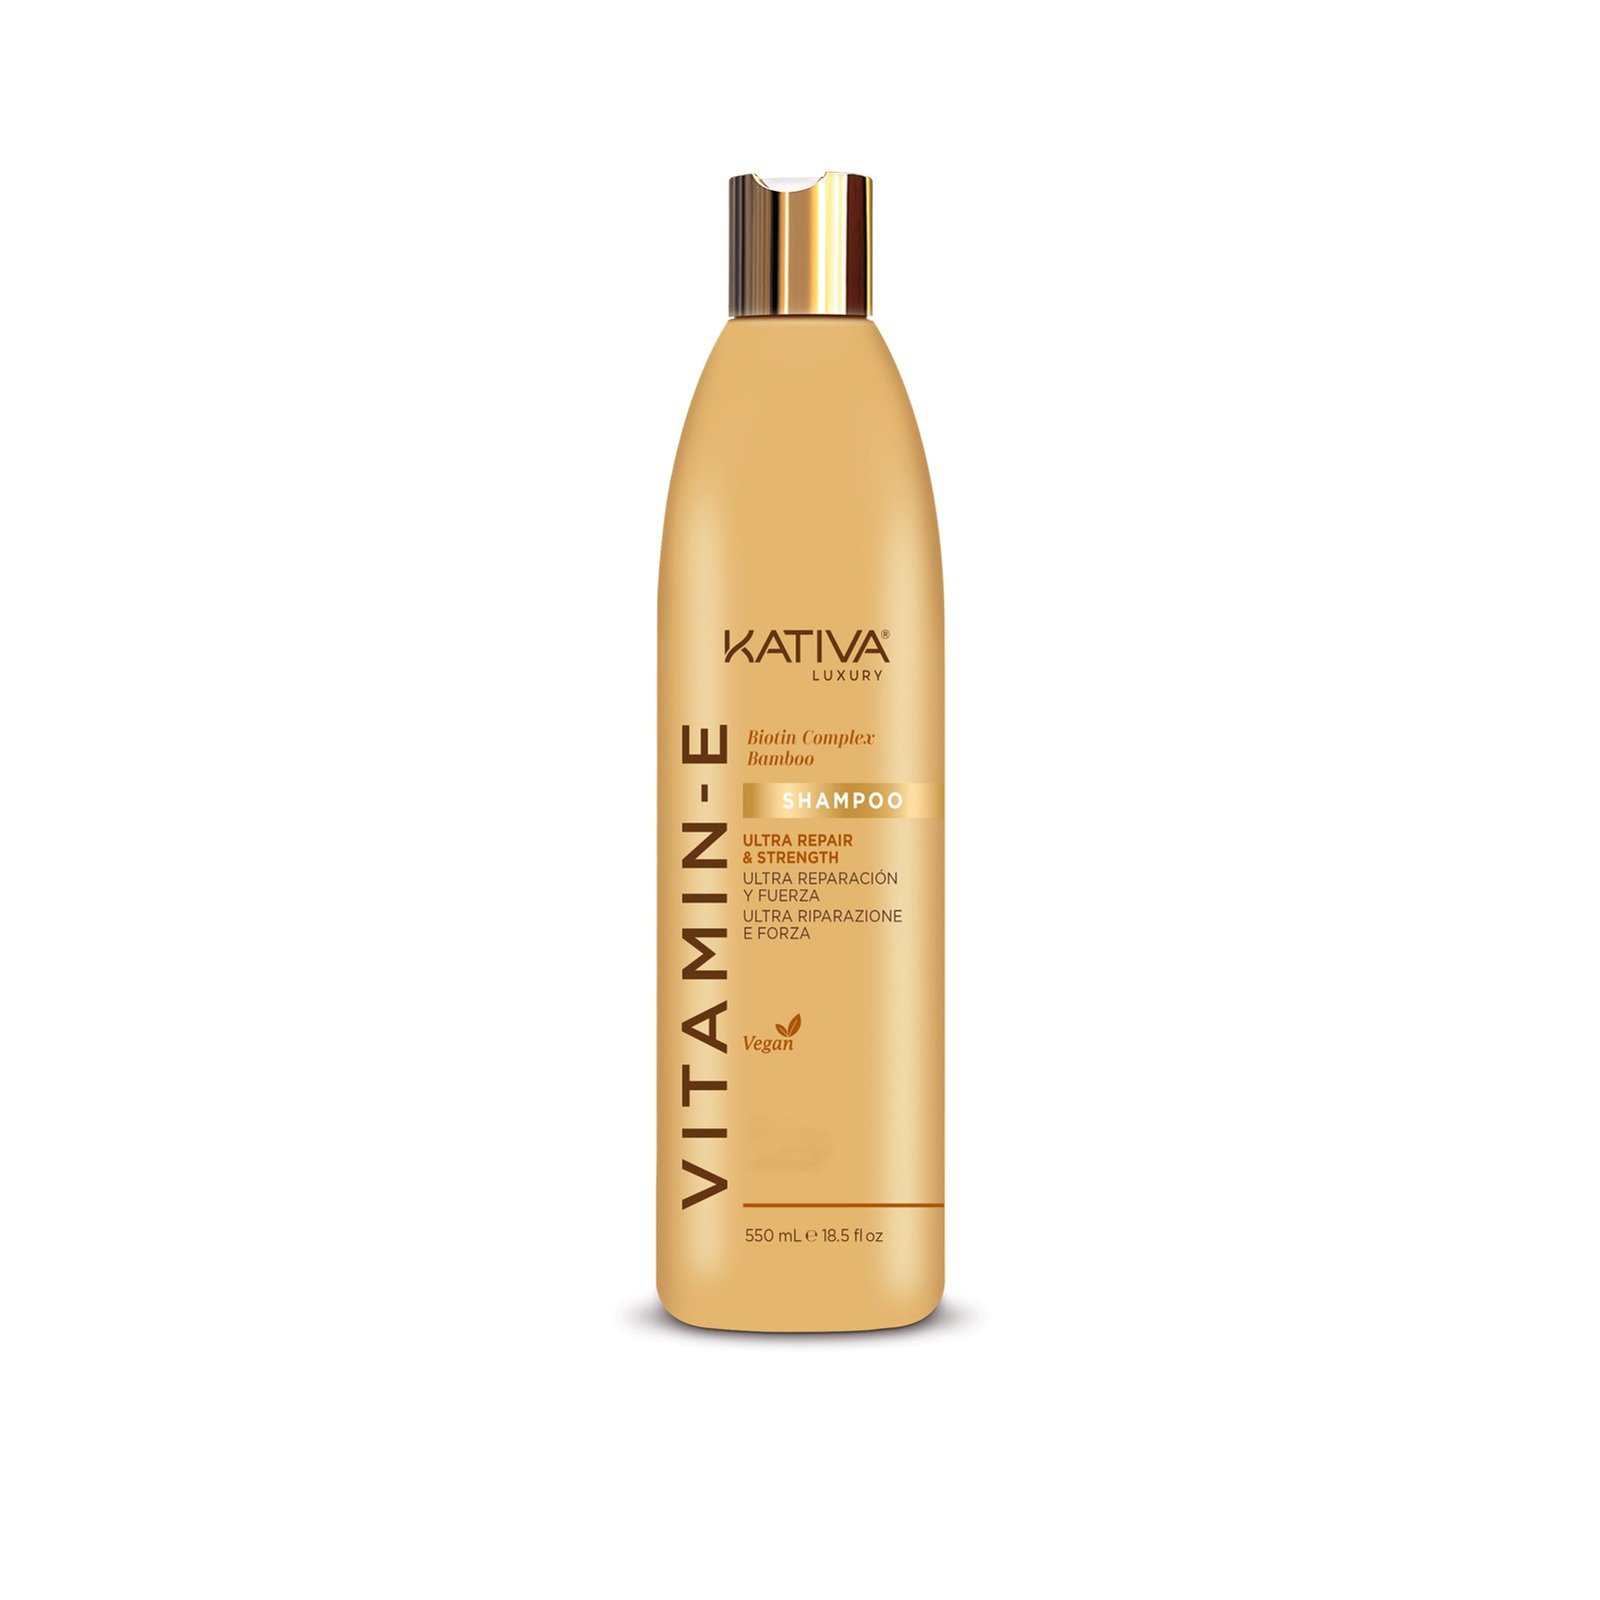 Kativa Vitamin-E Biotin Complex Bamboo Shampoo 550ml (18.5 fl oz)